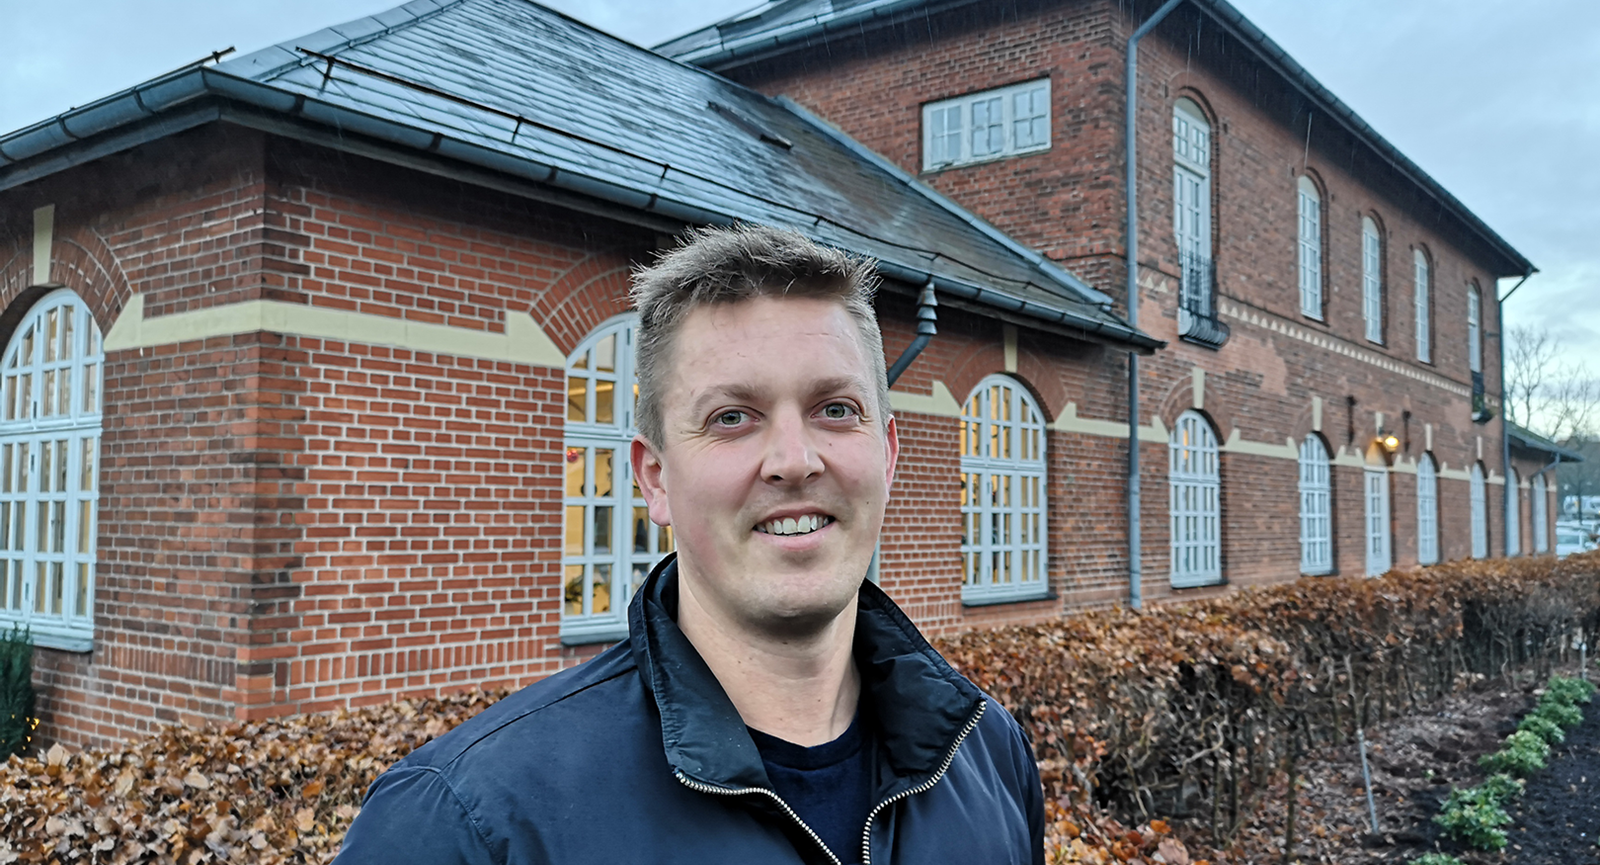 Finansøkonom-studerende Kristian Kock Pedersen smilende foran den gamle stationsbygning i Hammel.